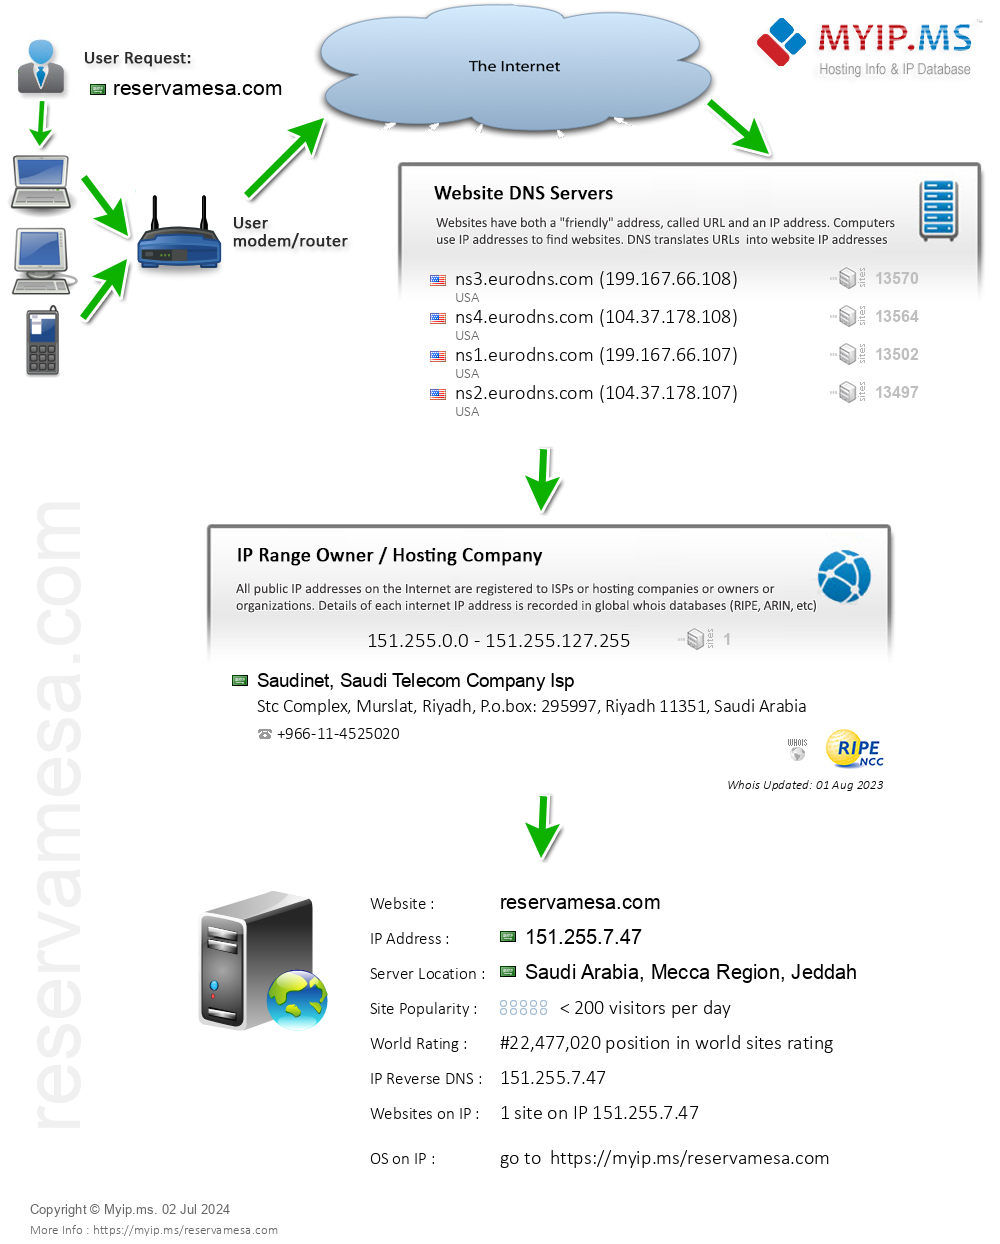 Reservamesa.com - Website Hosting Visual IP Diagram